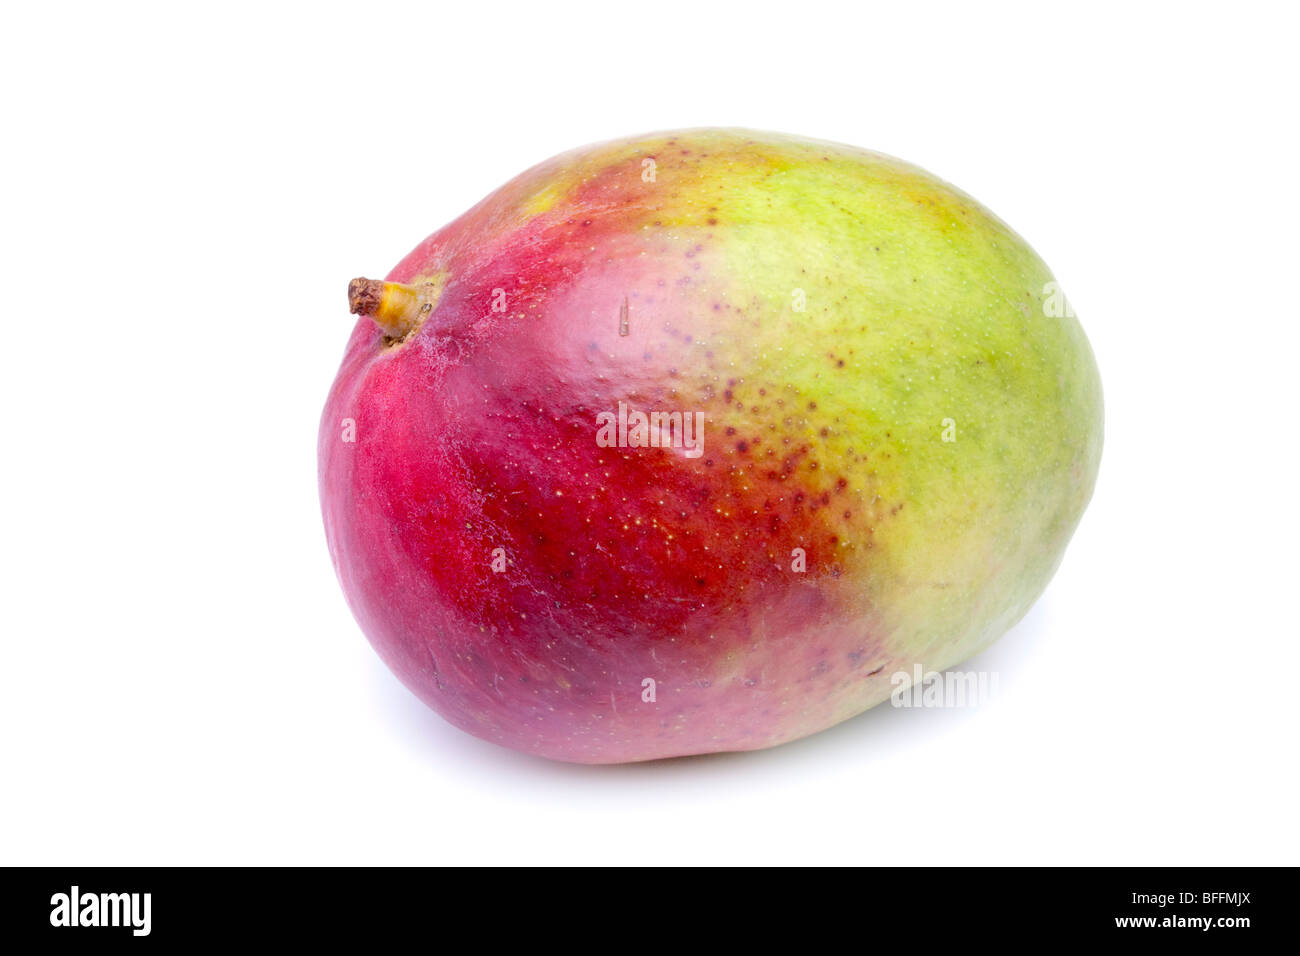 juicy Mango fruit isolated against white background. Stock Photo